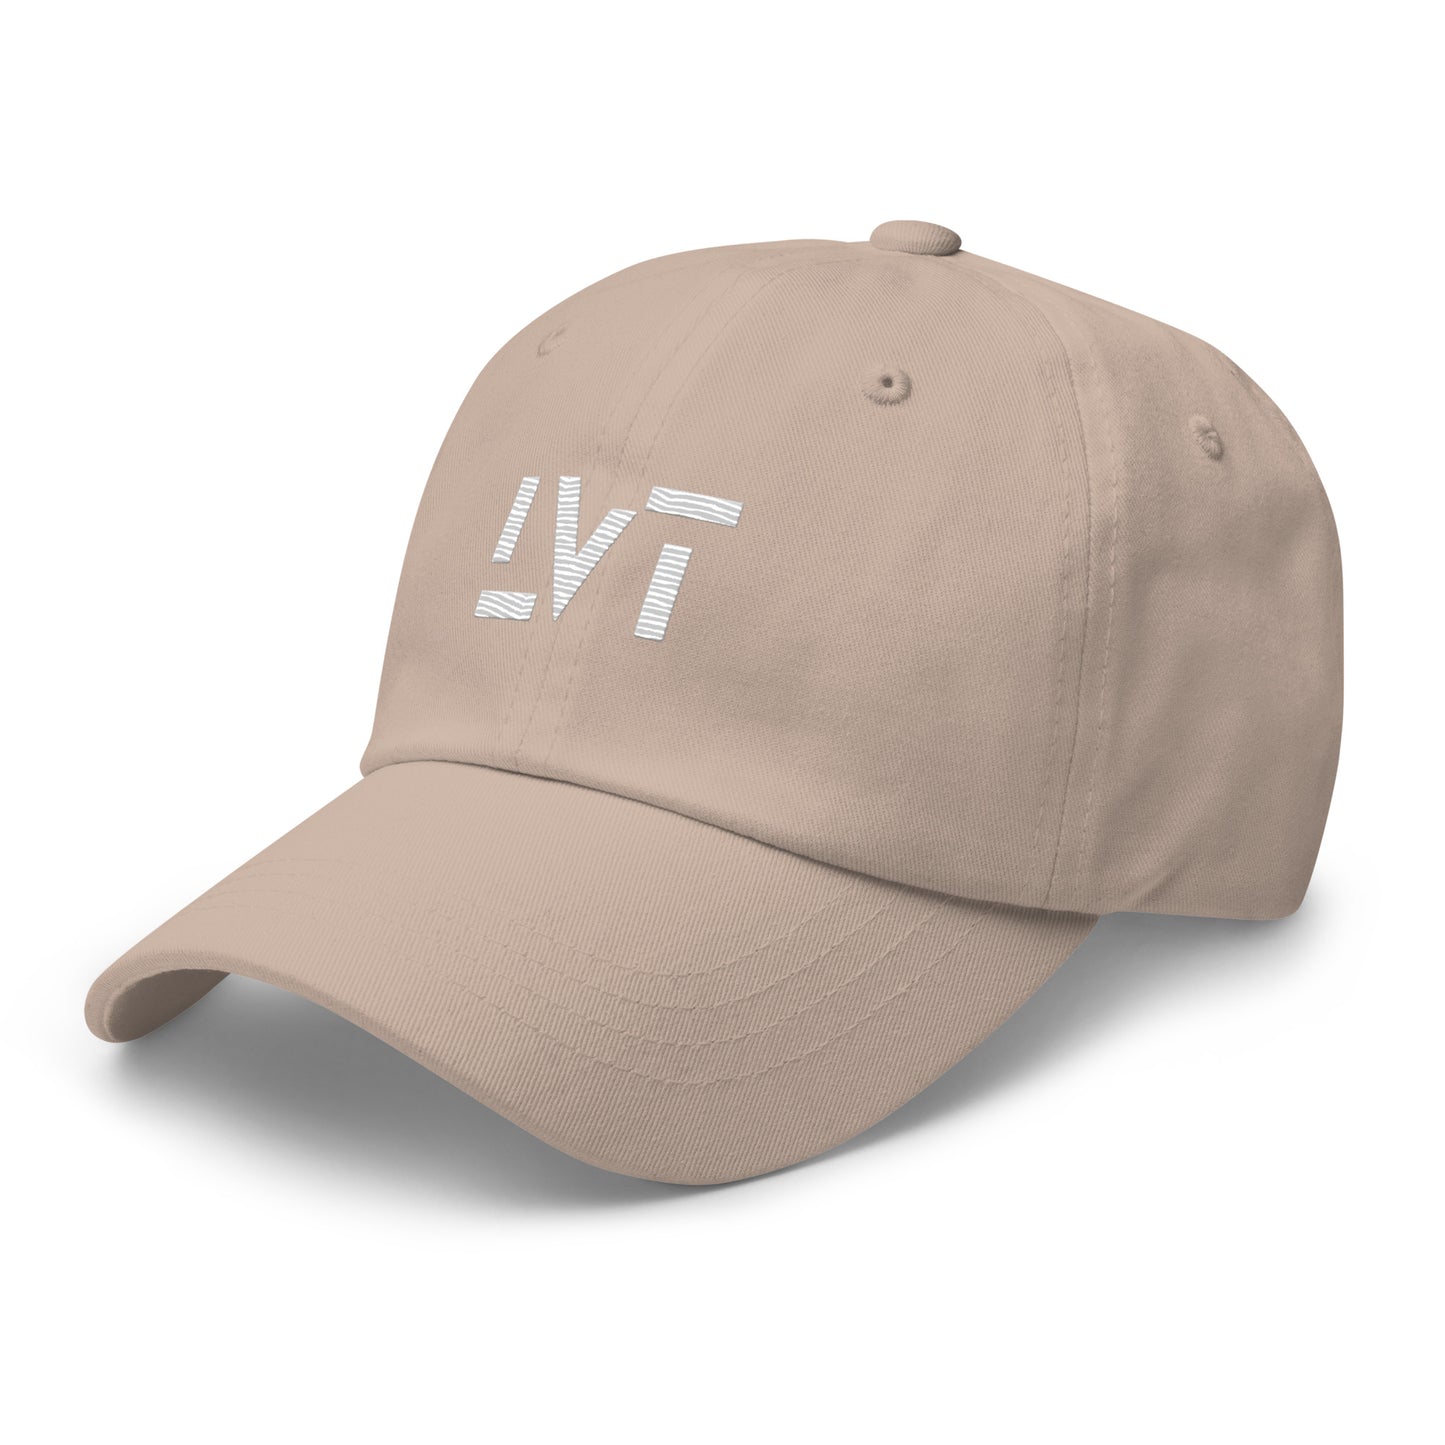 Blanka LVT Logo Cap